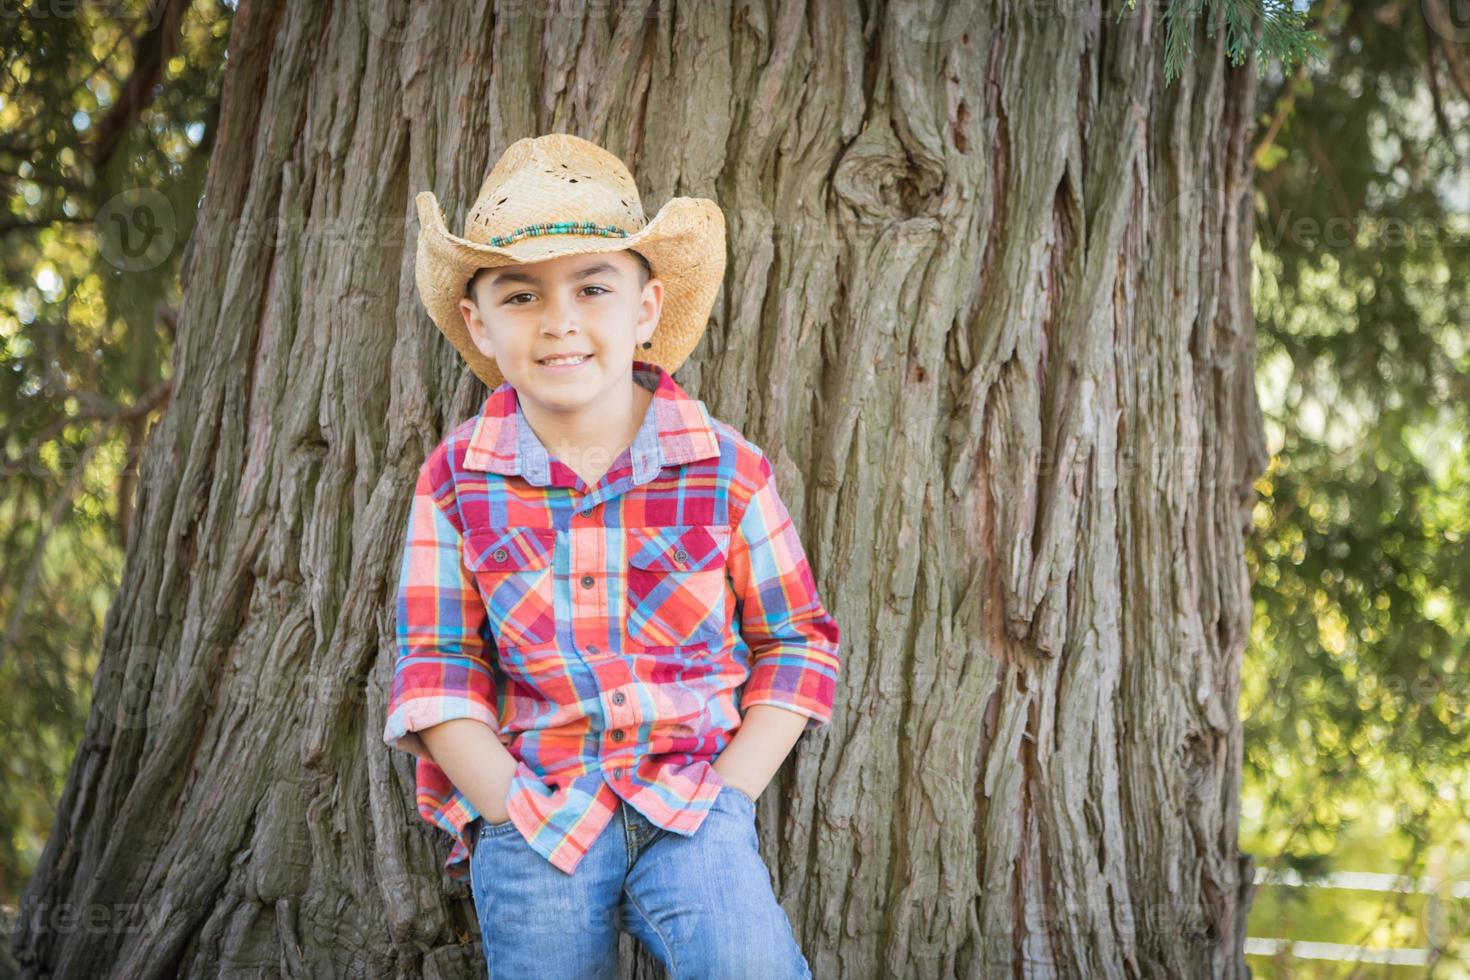 jeune garçon de race mixte portant un chapeau de cow-boy debout à l'extérieur. photo